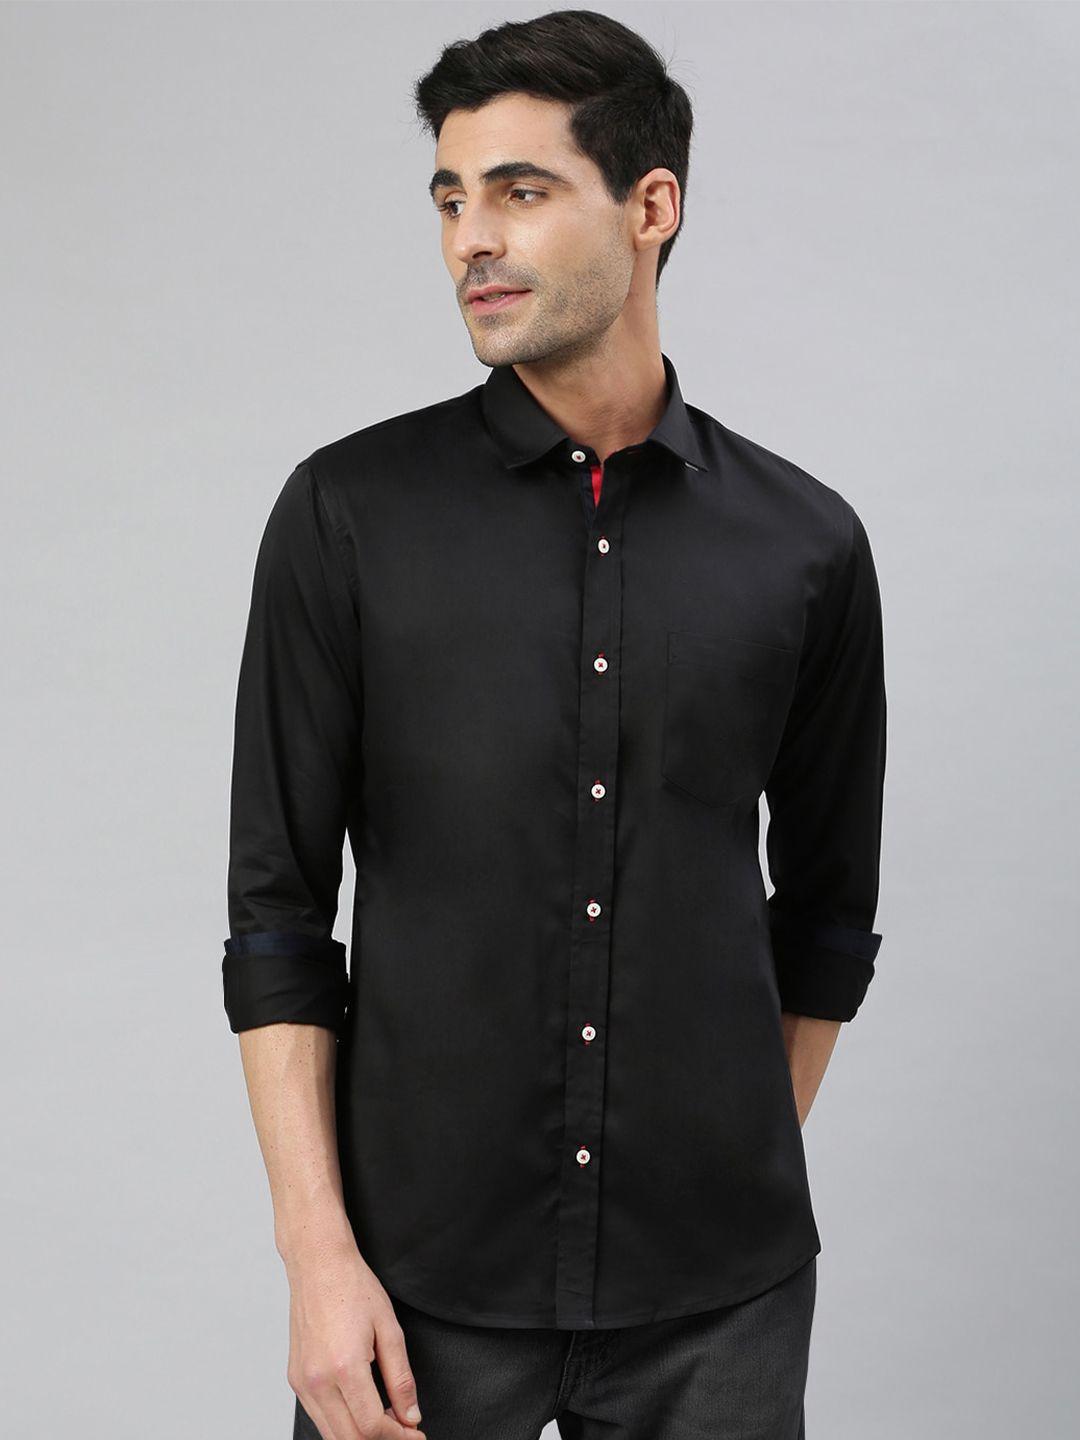 mr button men black smart slim fit cotton casual shirt